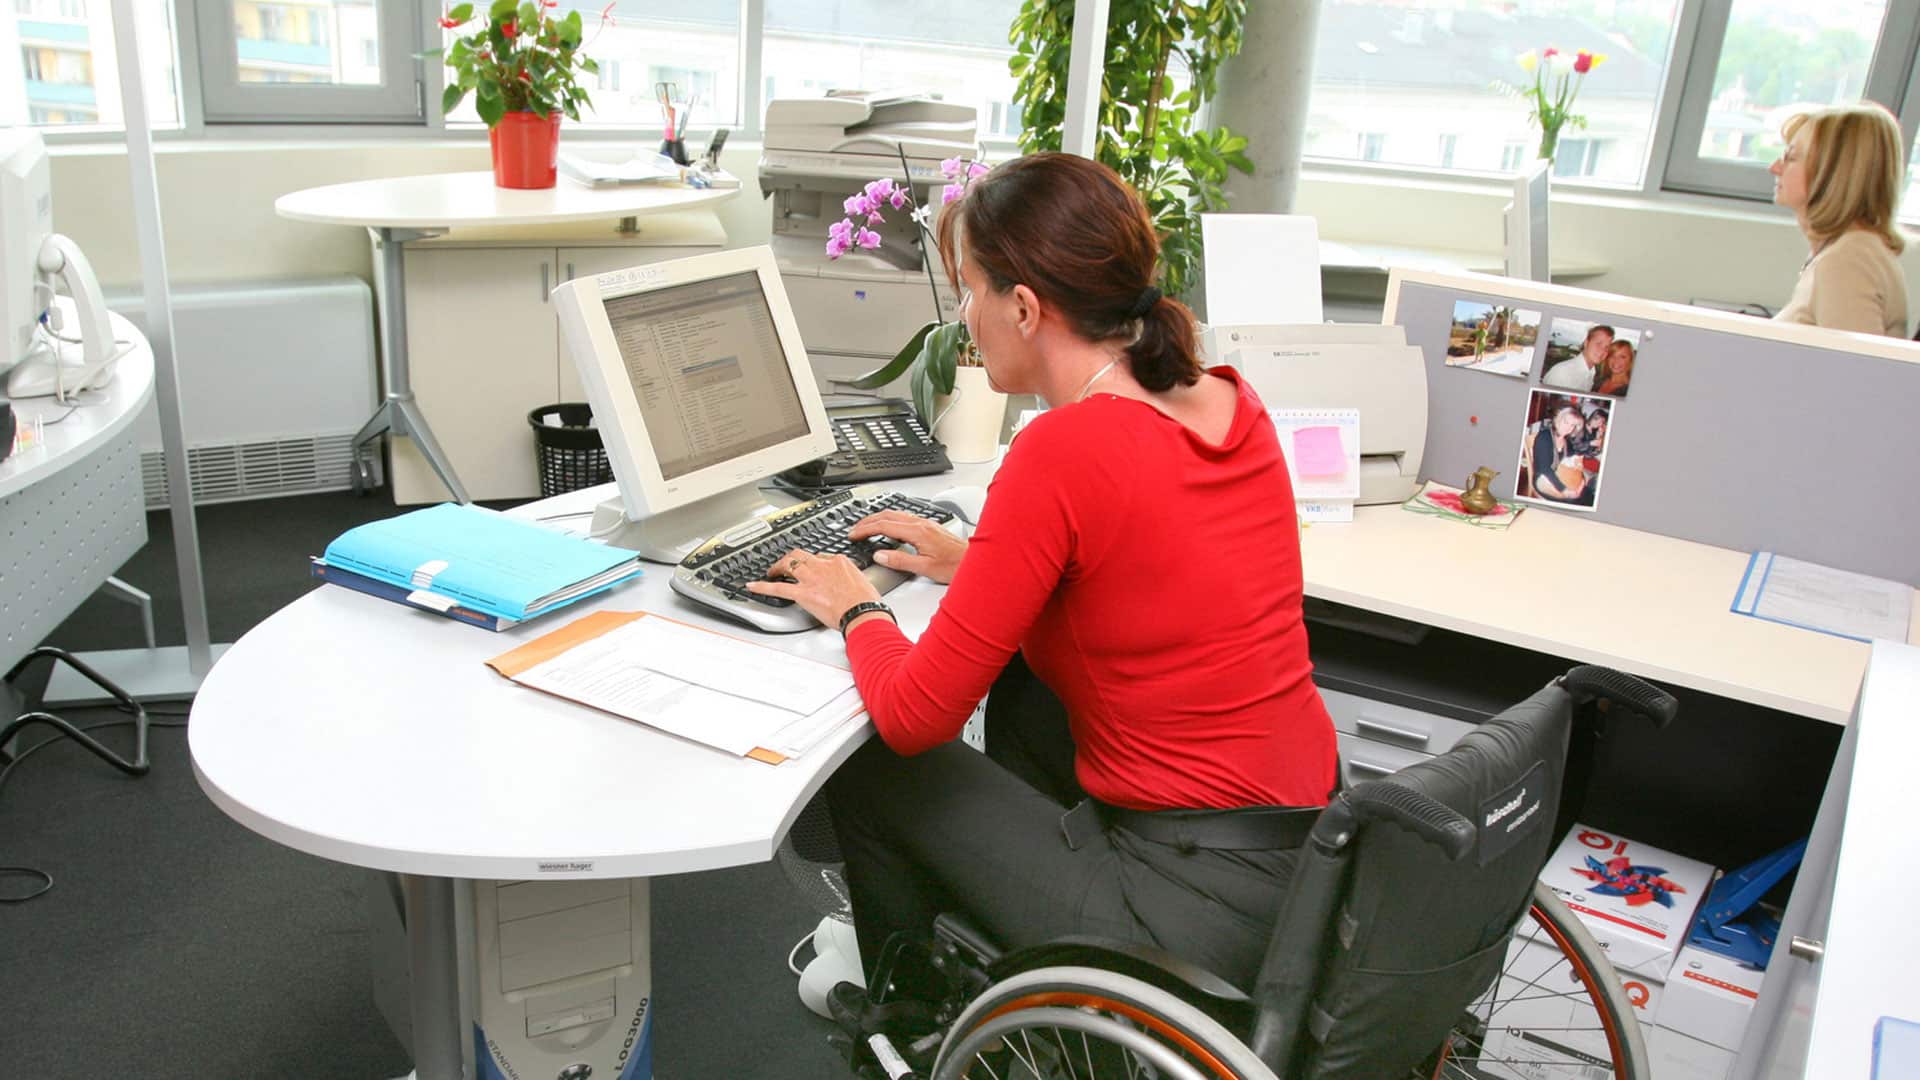 Работа инвалиду рабочая группа. Рабочие места для инвалидов. Трудоустройство инвалидов. Рабочее место для людей с ограниченными возможностями. Квотирование рабочих мест для инвалидов.